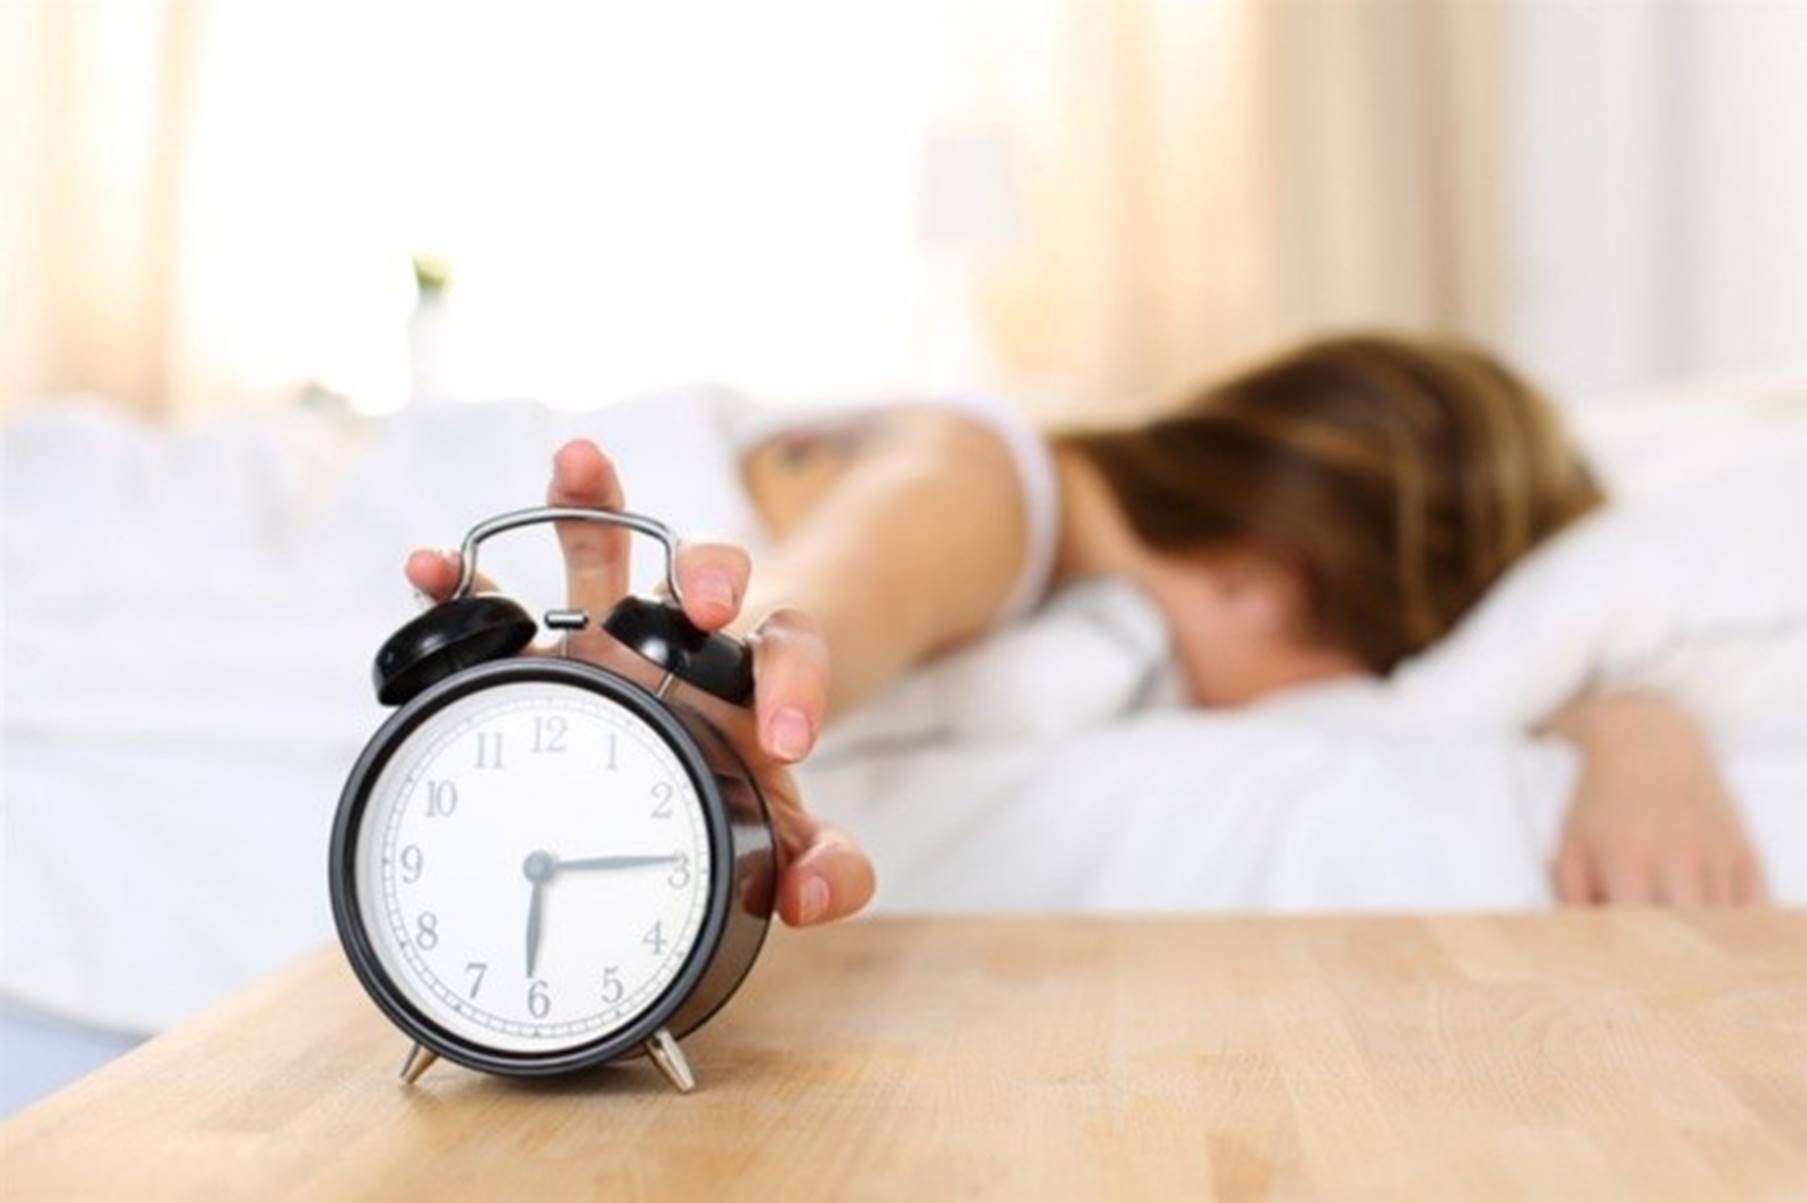  Veja o que acontece com seu corpo quando você dorme muito tarde